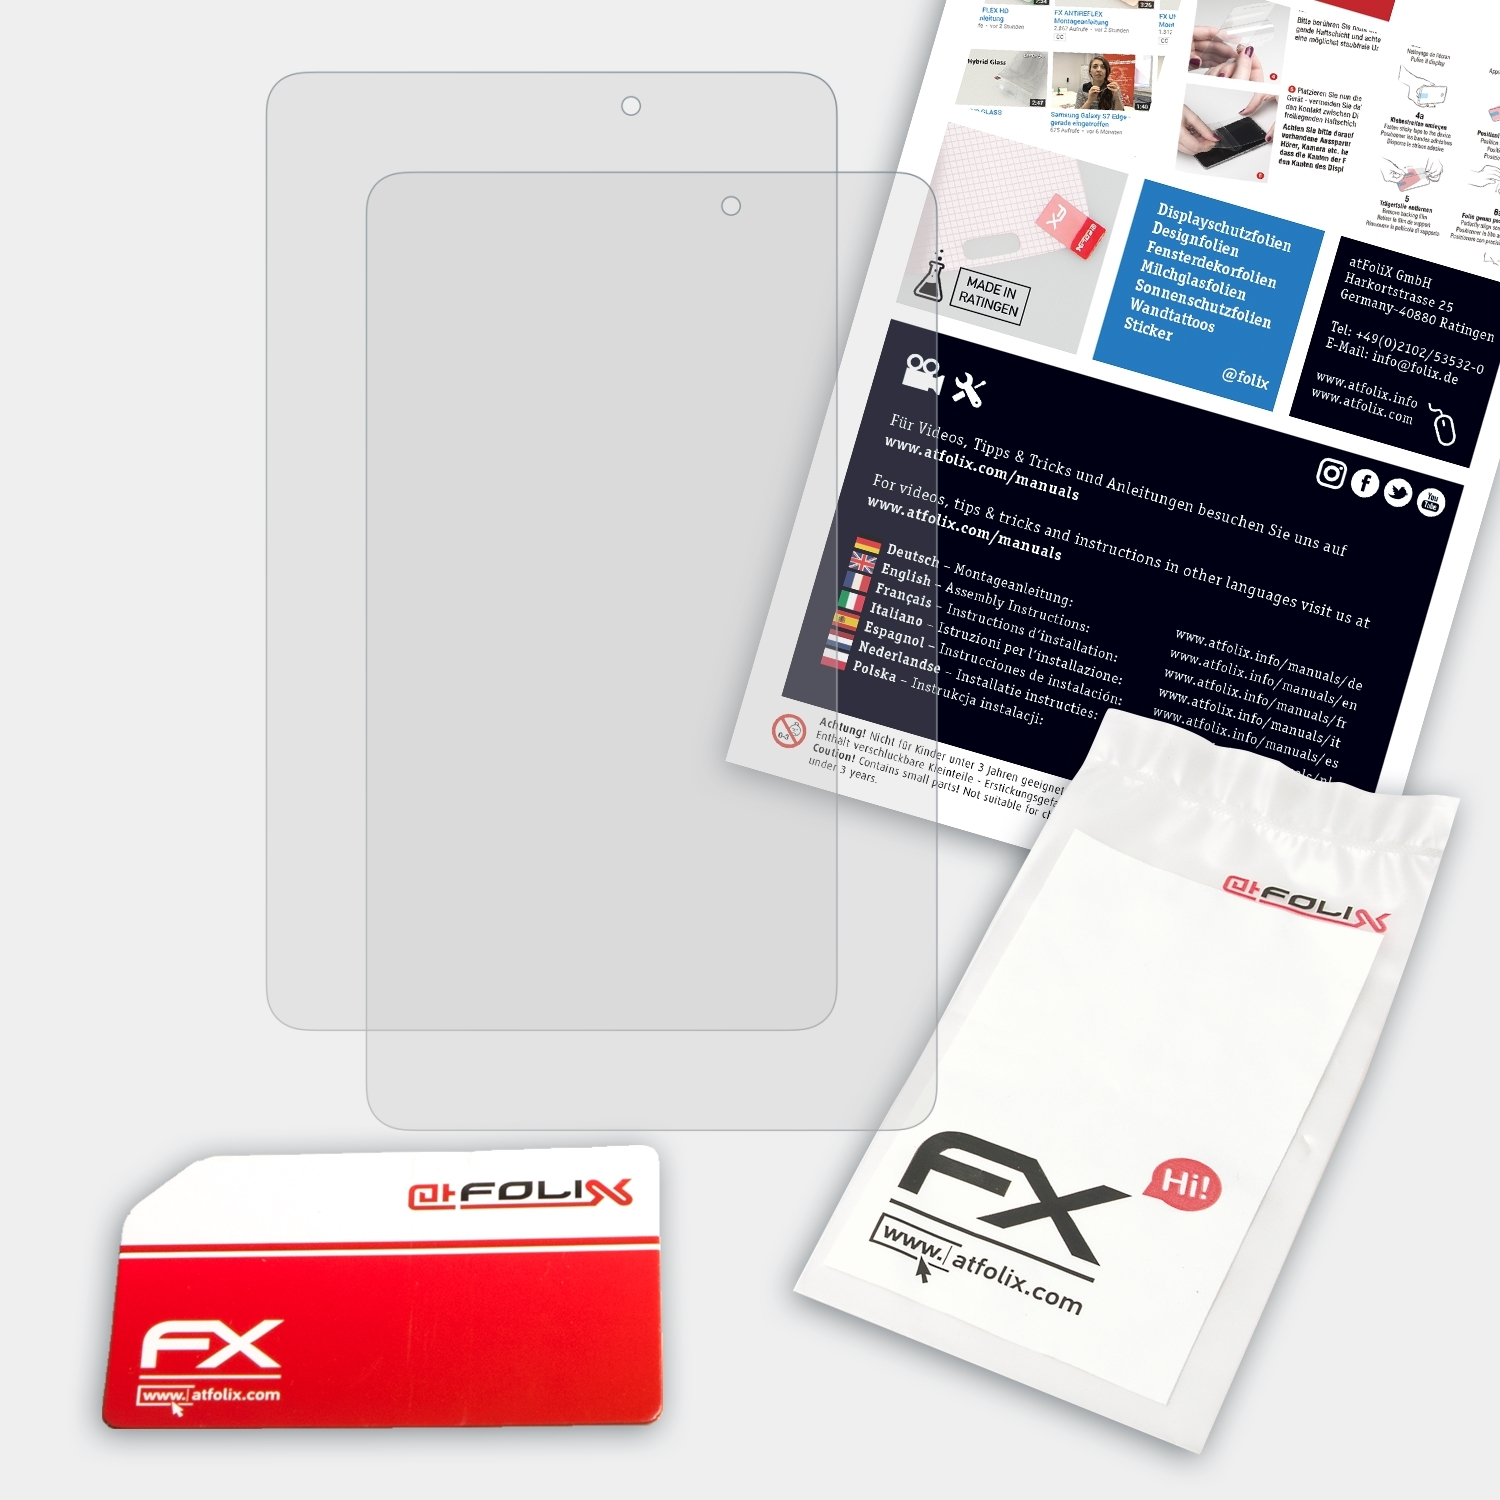 ATFOLIX 2x FX-Antireflex Displayschutz(für Acer 8 (A1-840FHD)) Iconia Tab